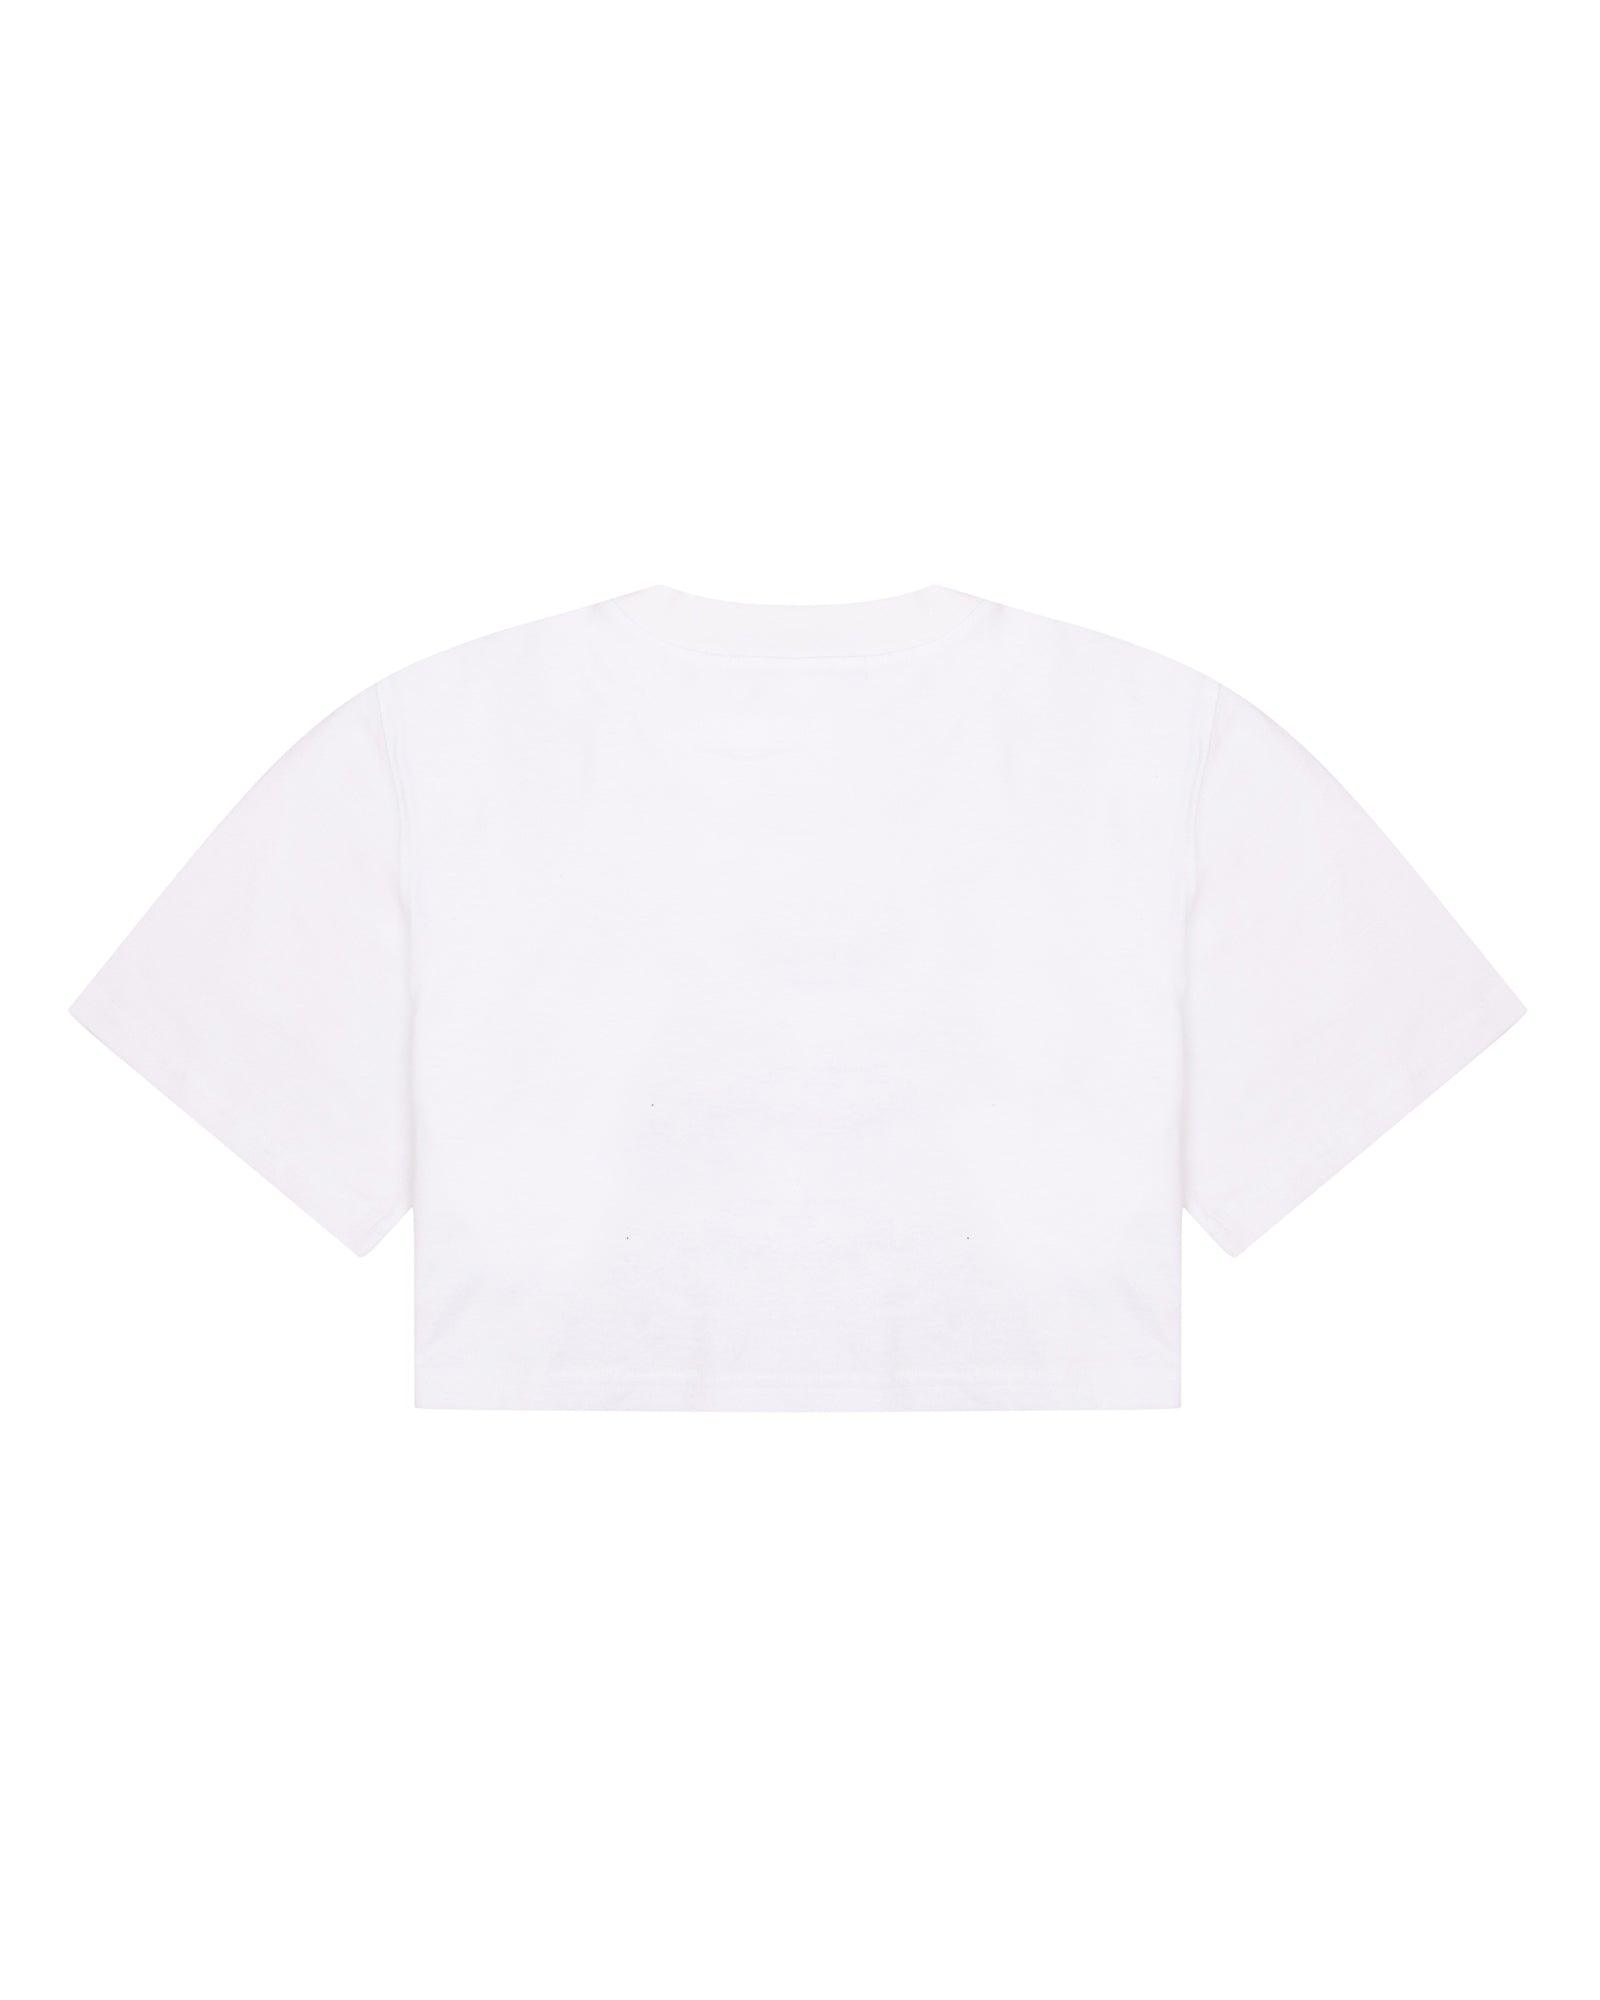 Social Club Crop T-Shirt - SOON TO BE ANNOUNCED